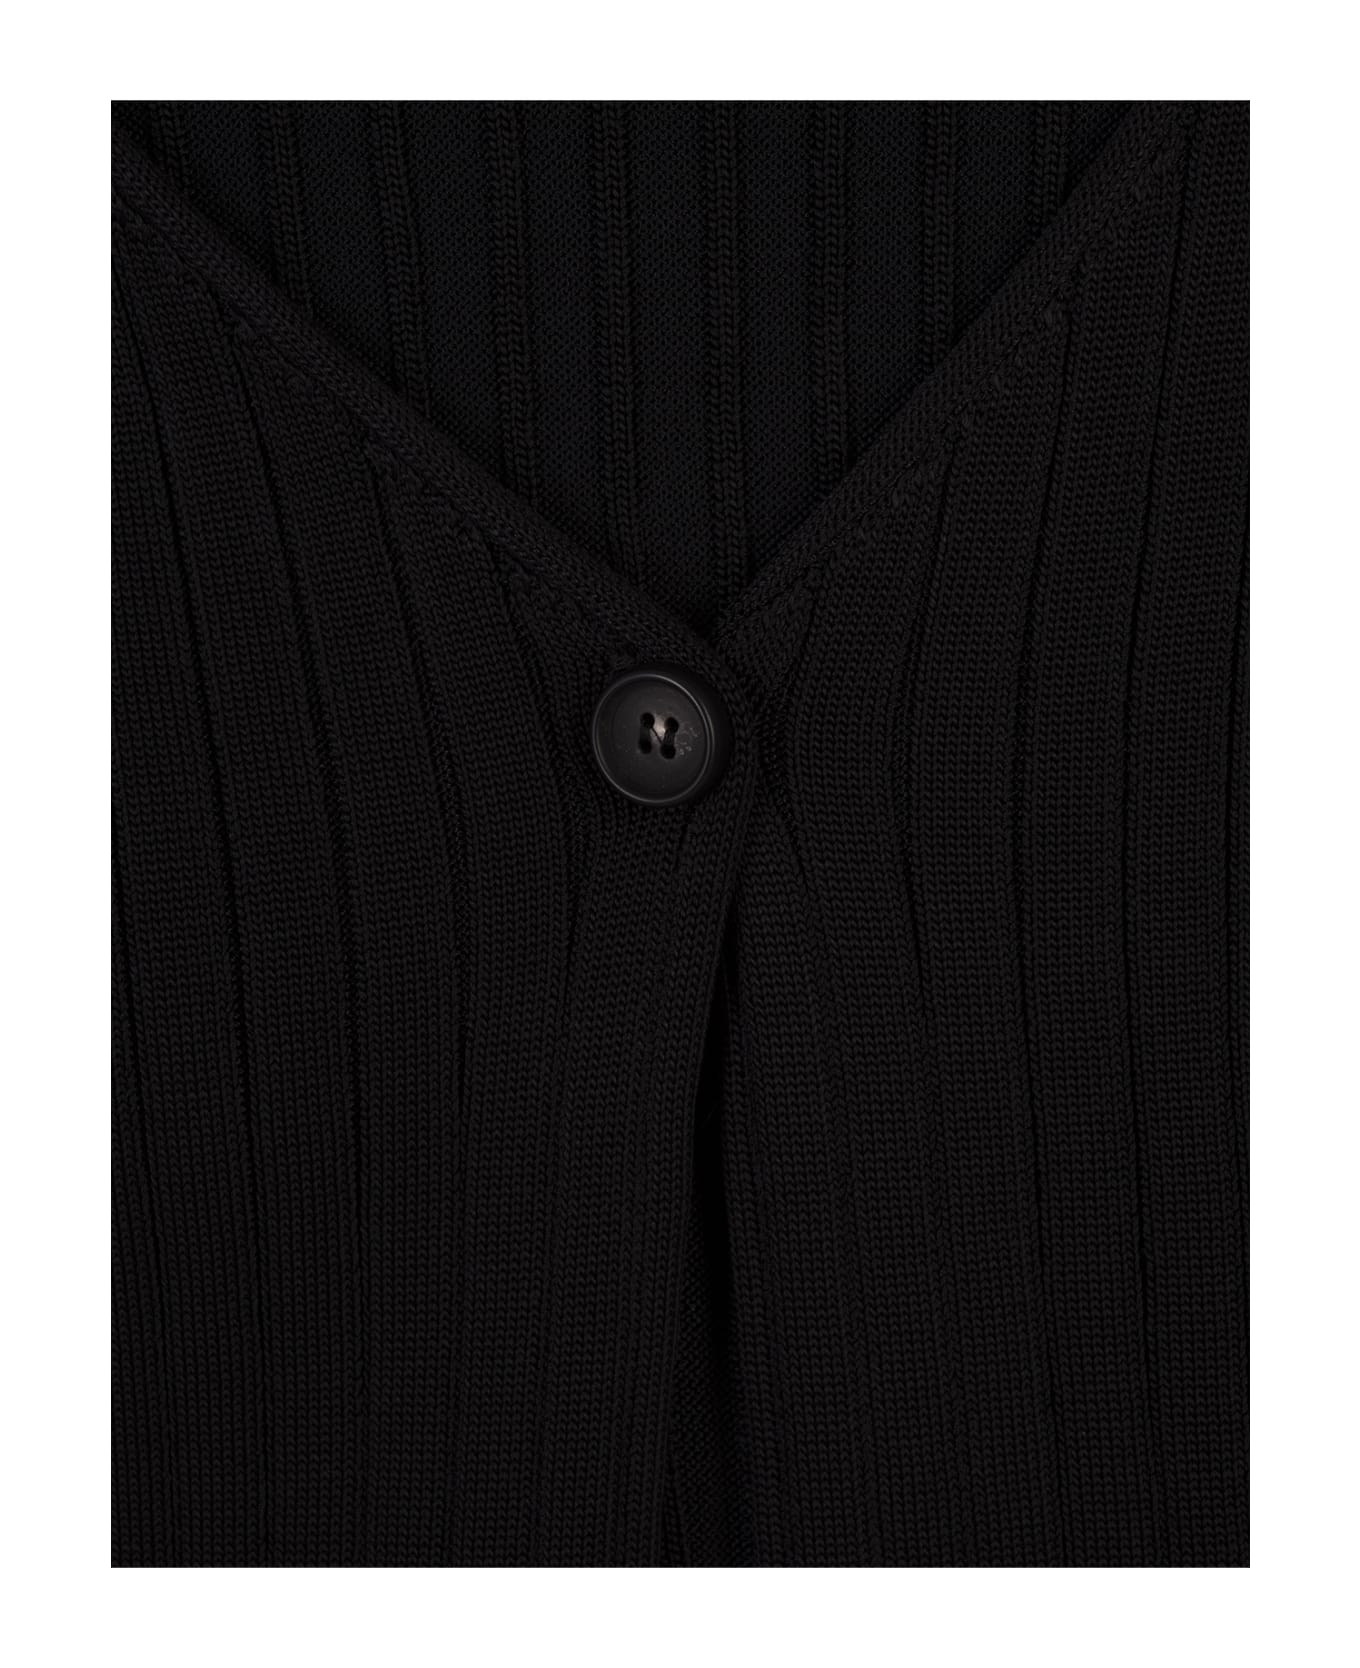 Marni Black Ribbed Knit Short Cardigan - Black